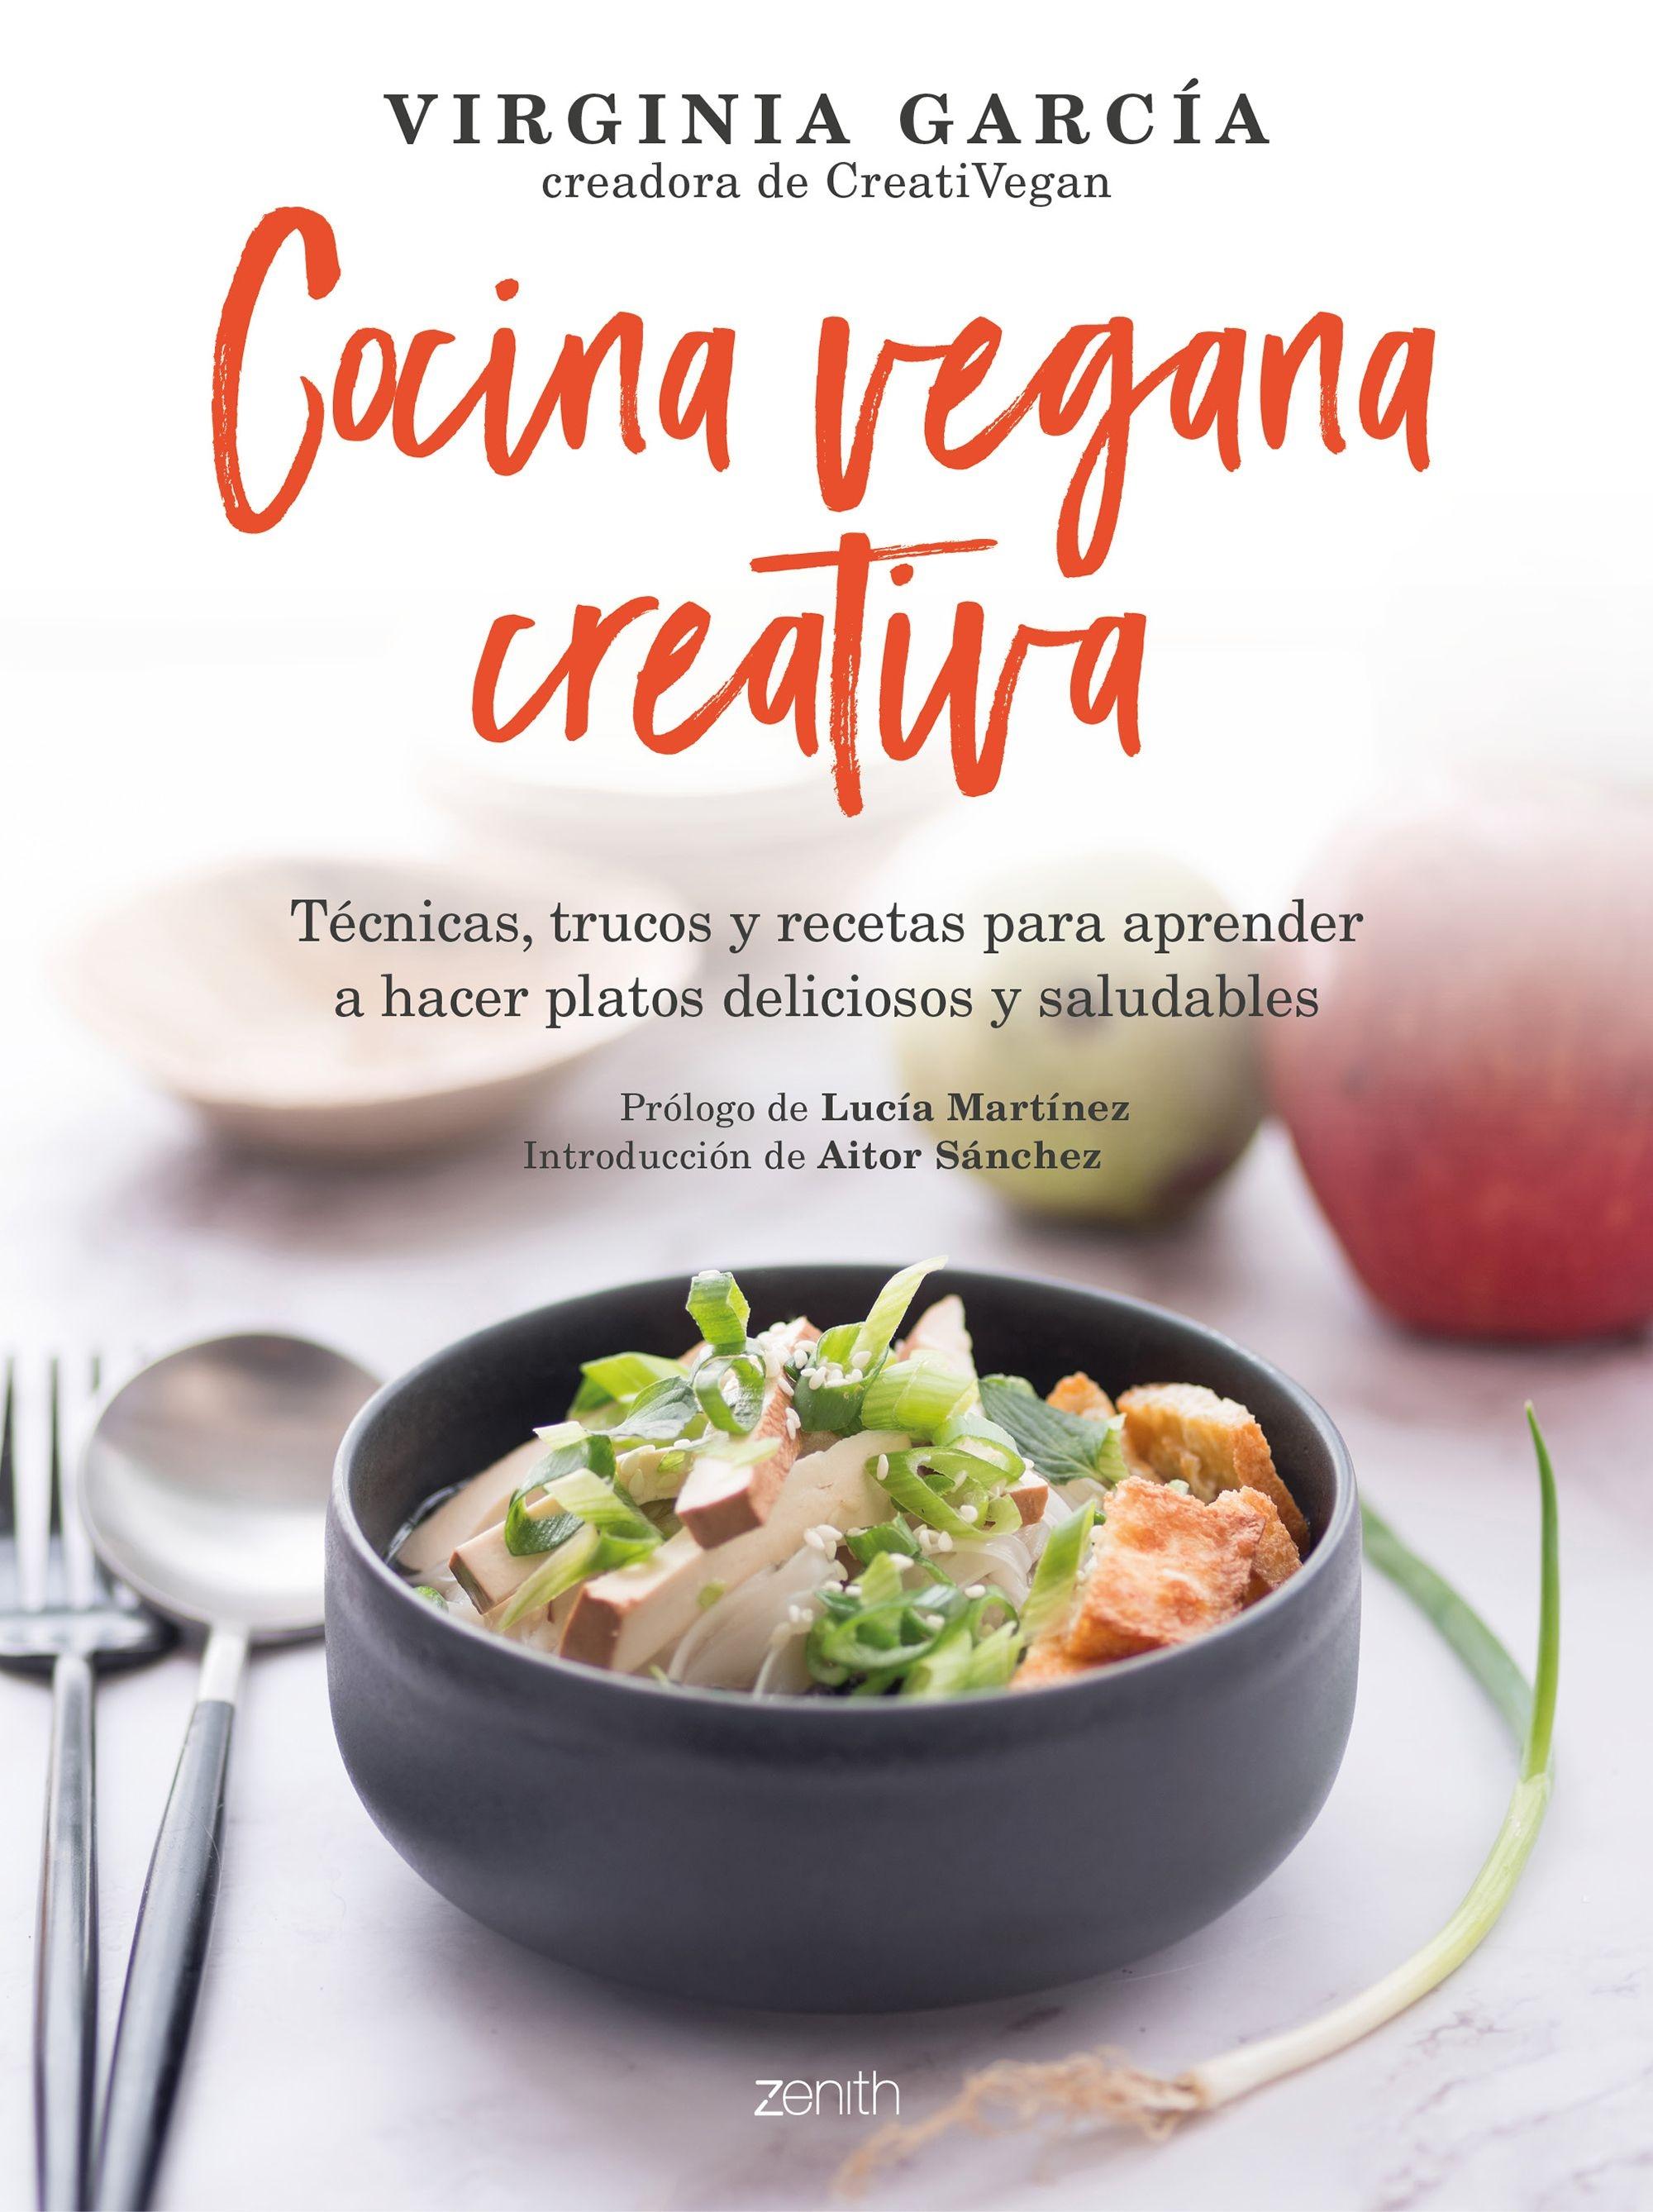 Cocina vegana creativa "Técnicas, trucos y recetas para aprender a hacer platoso deliciosos y sa"